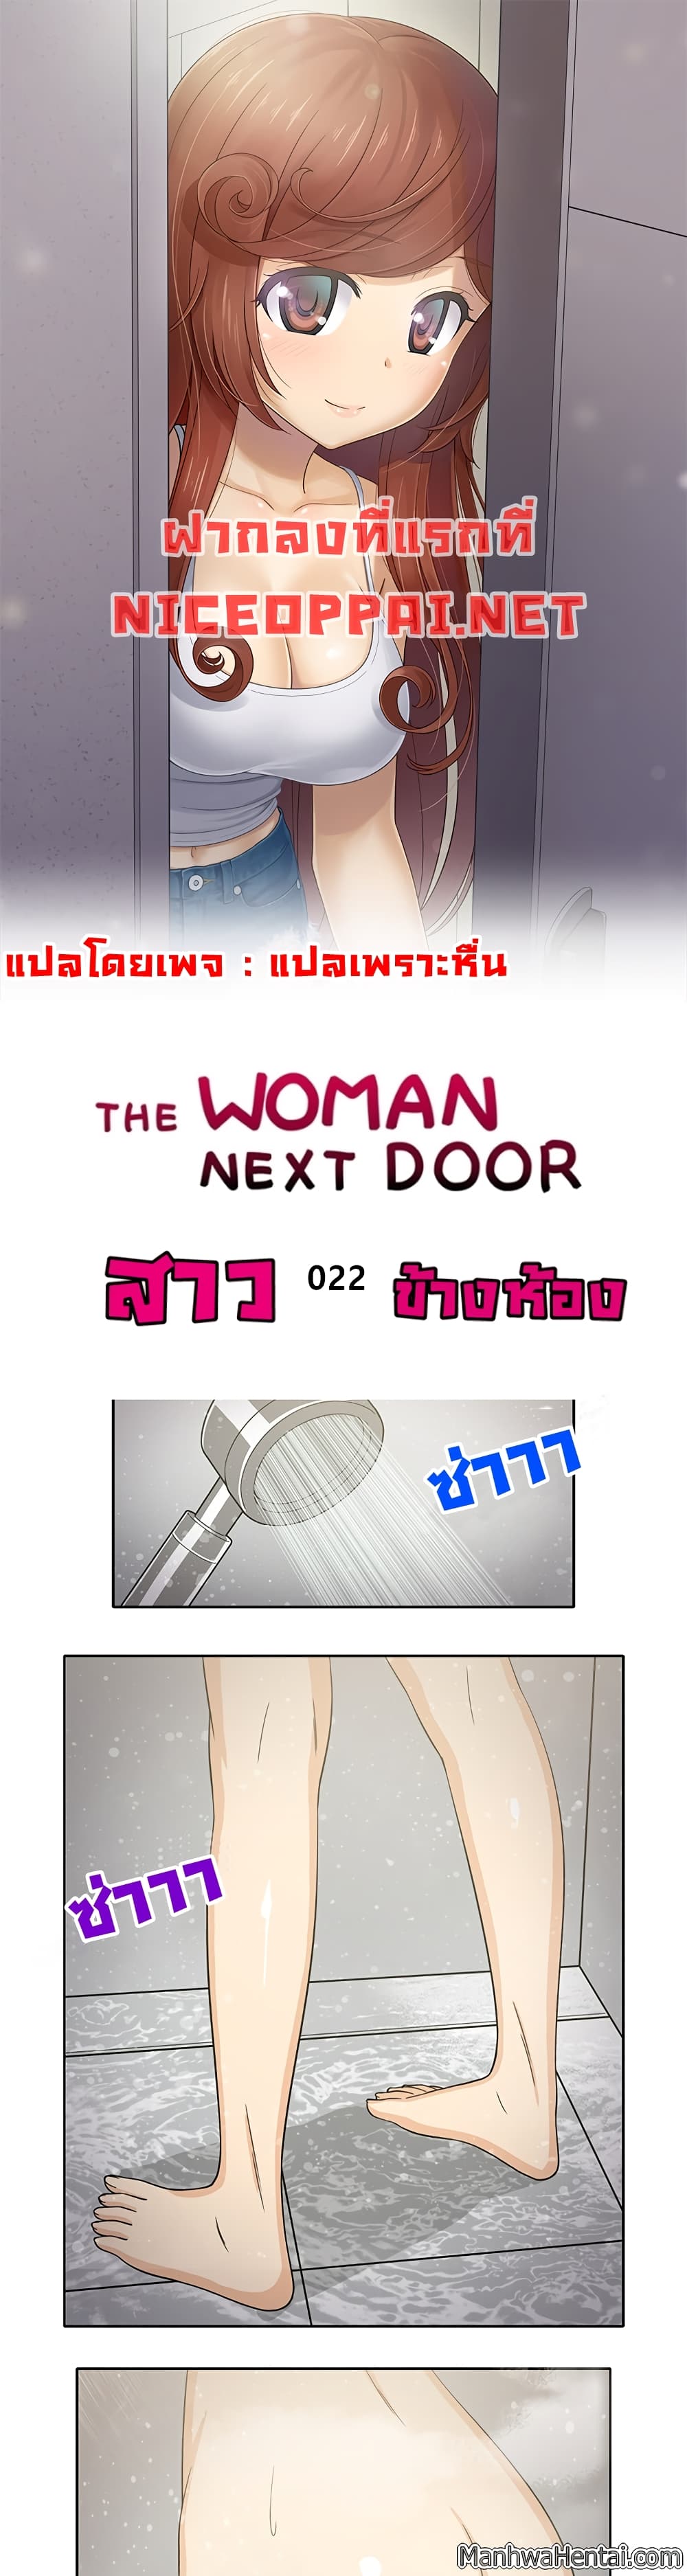 The Woman Next Door 22-22